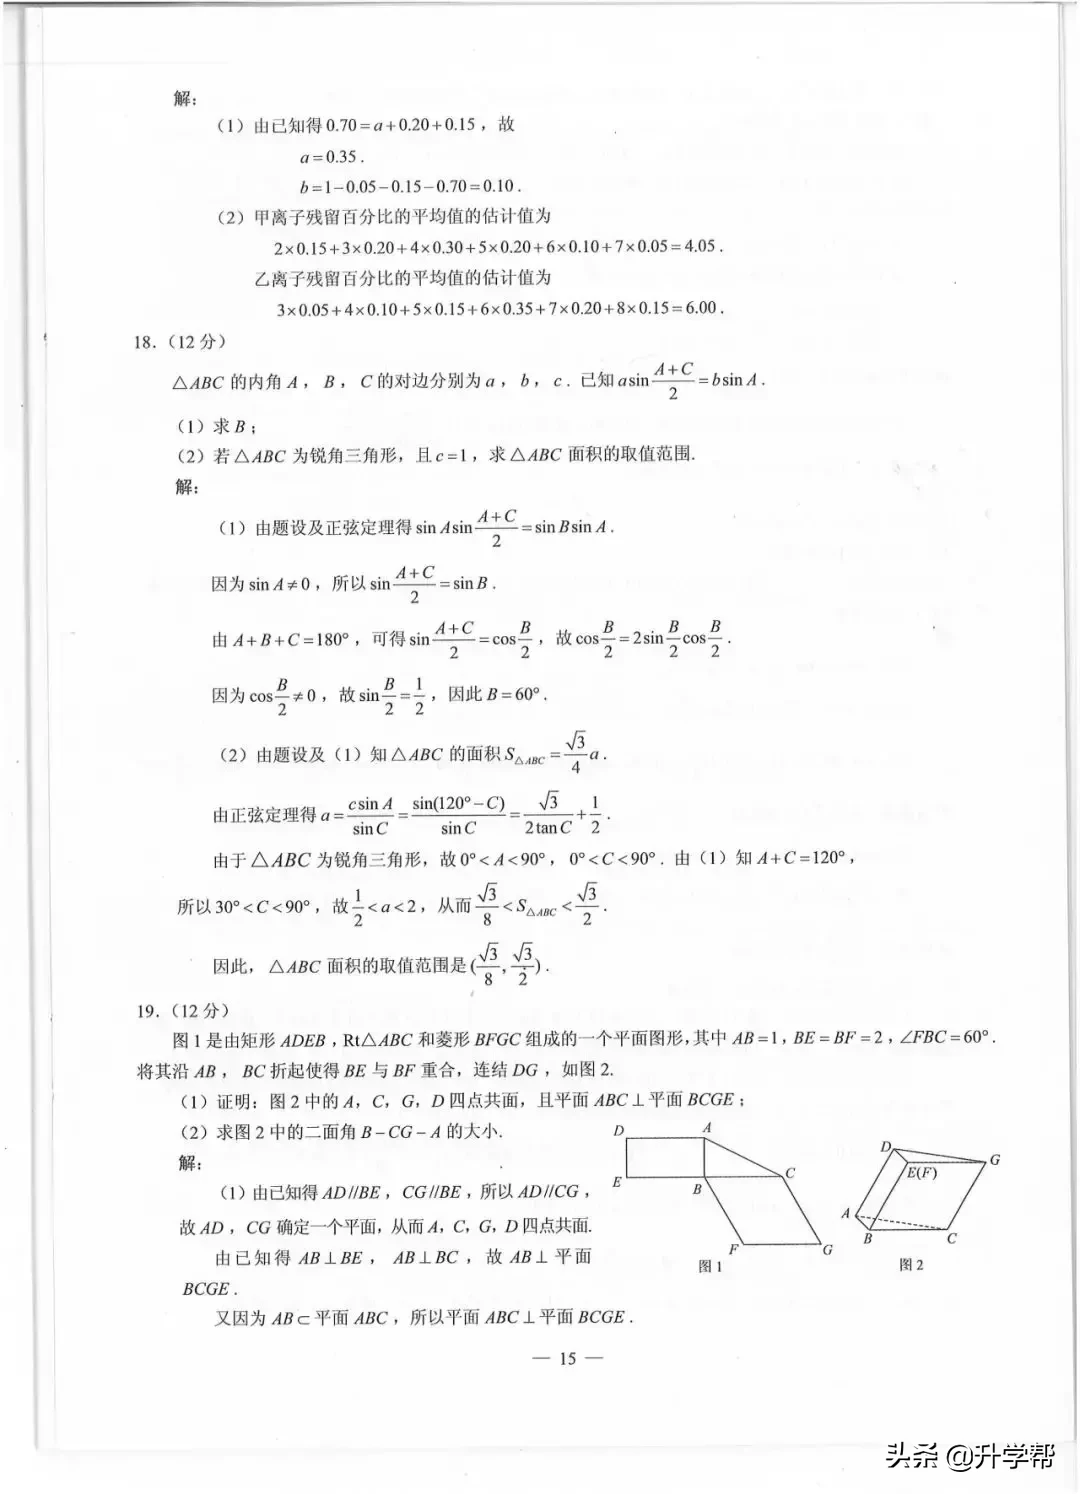 高考四川数学答案「四川数学高考全国卷第几卷」